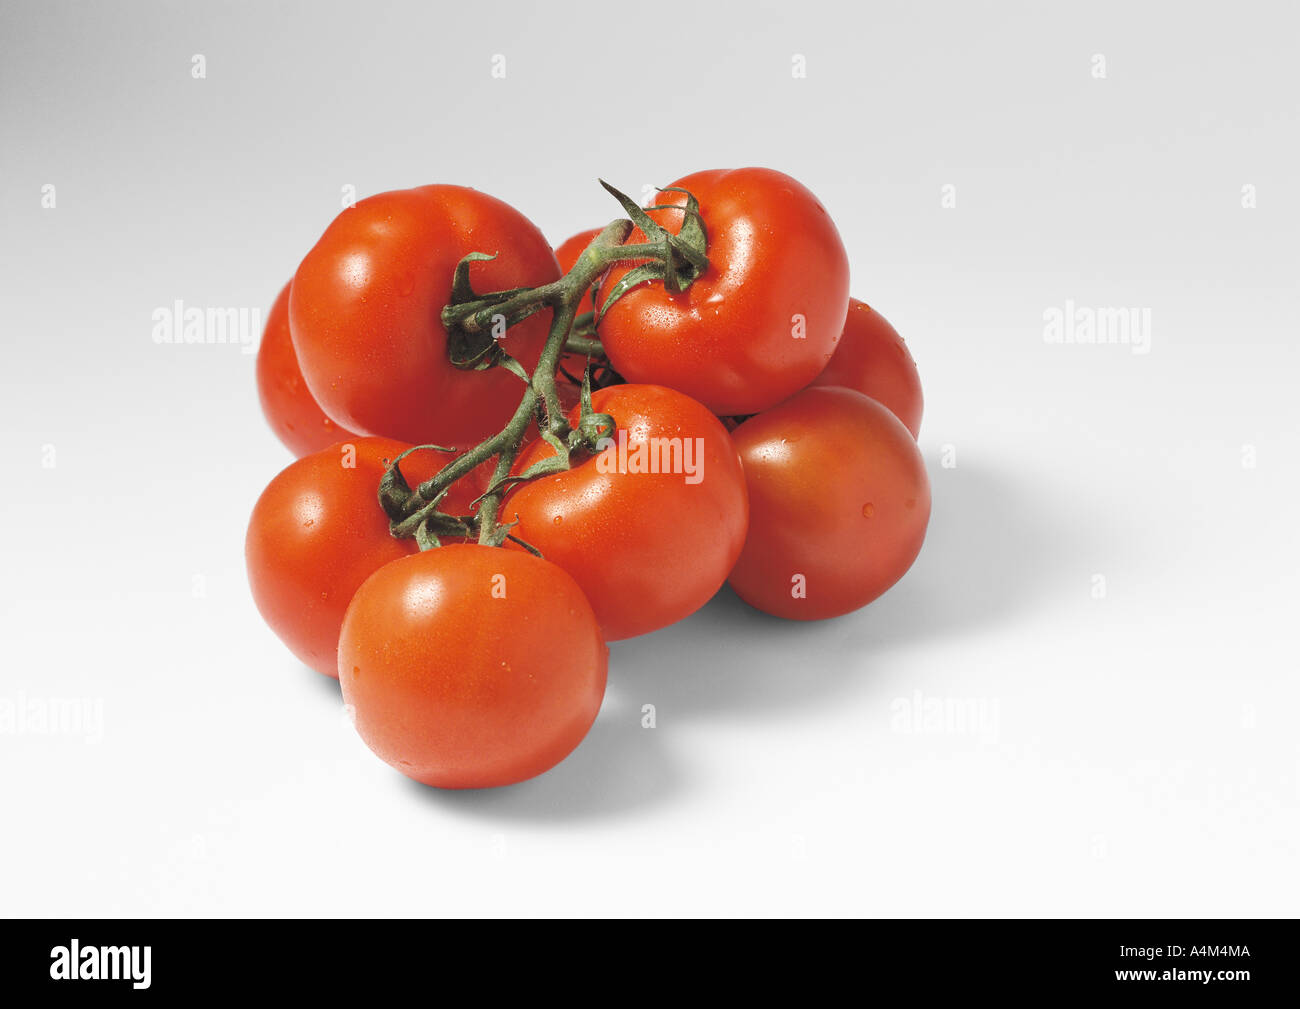 Vine tomatoes Stock Photo